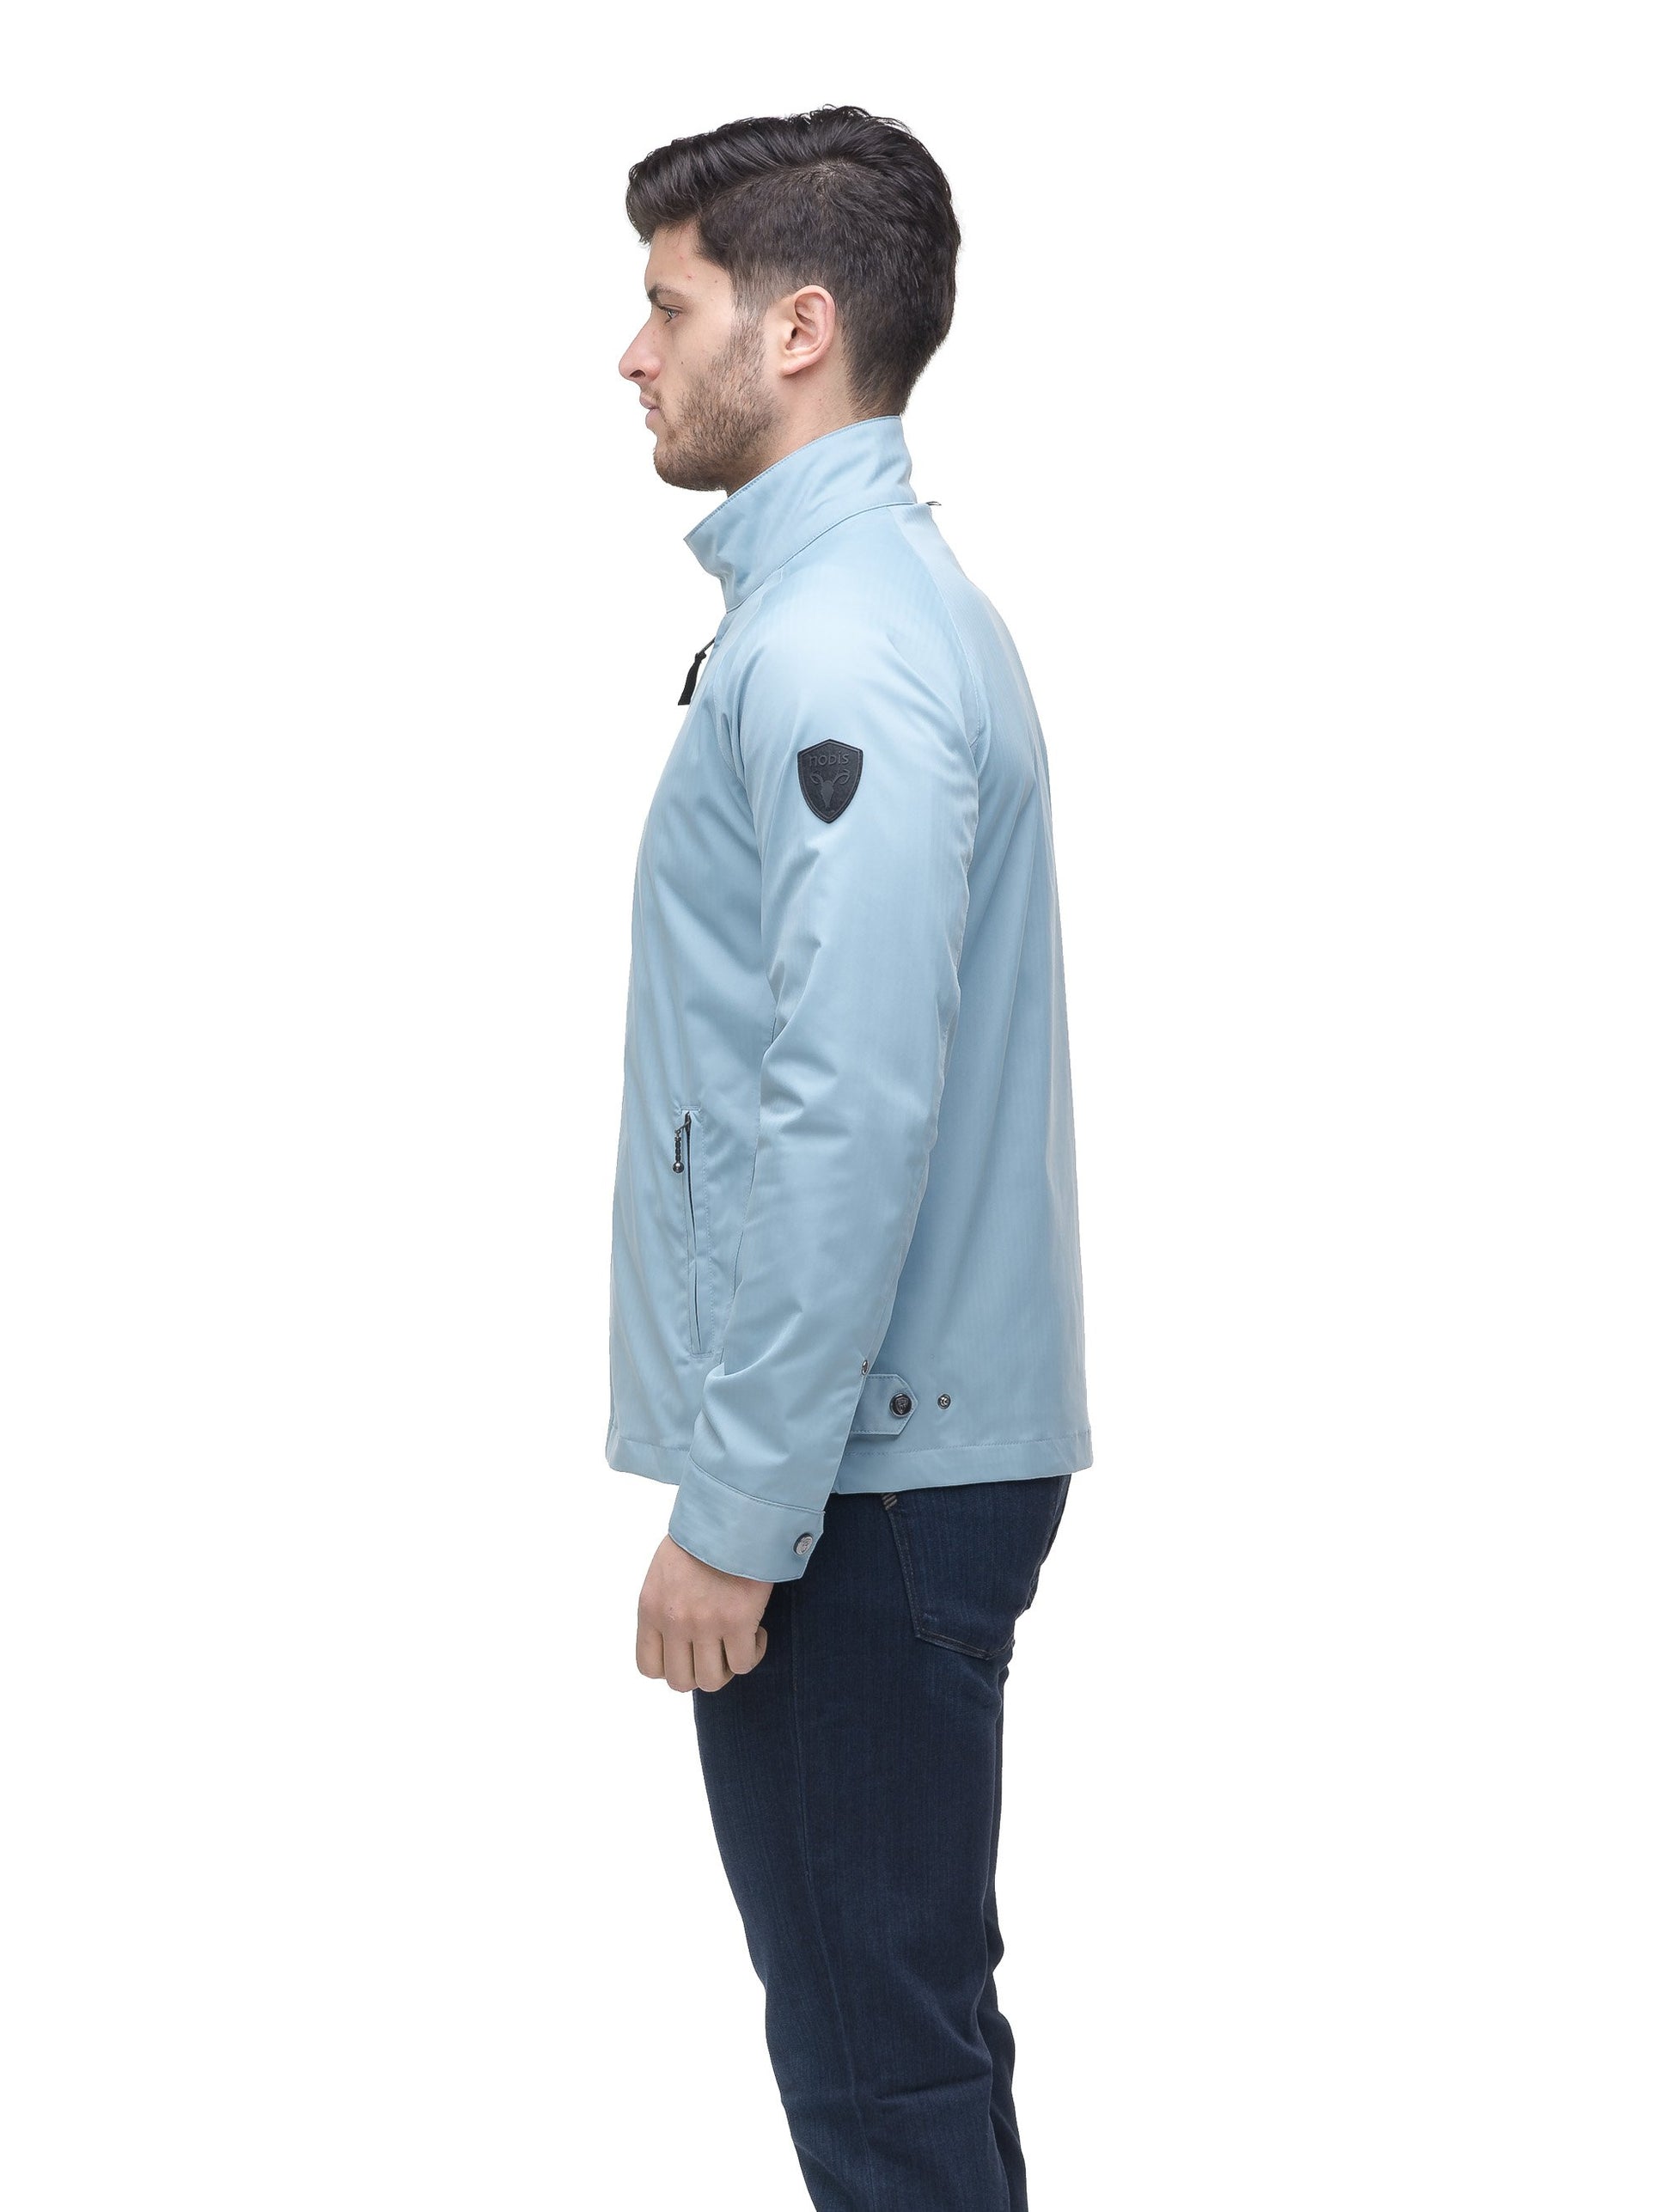 Men's zip up racer jacket in Slate Blue